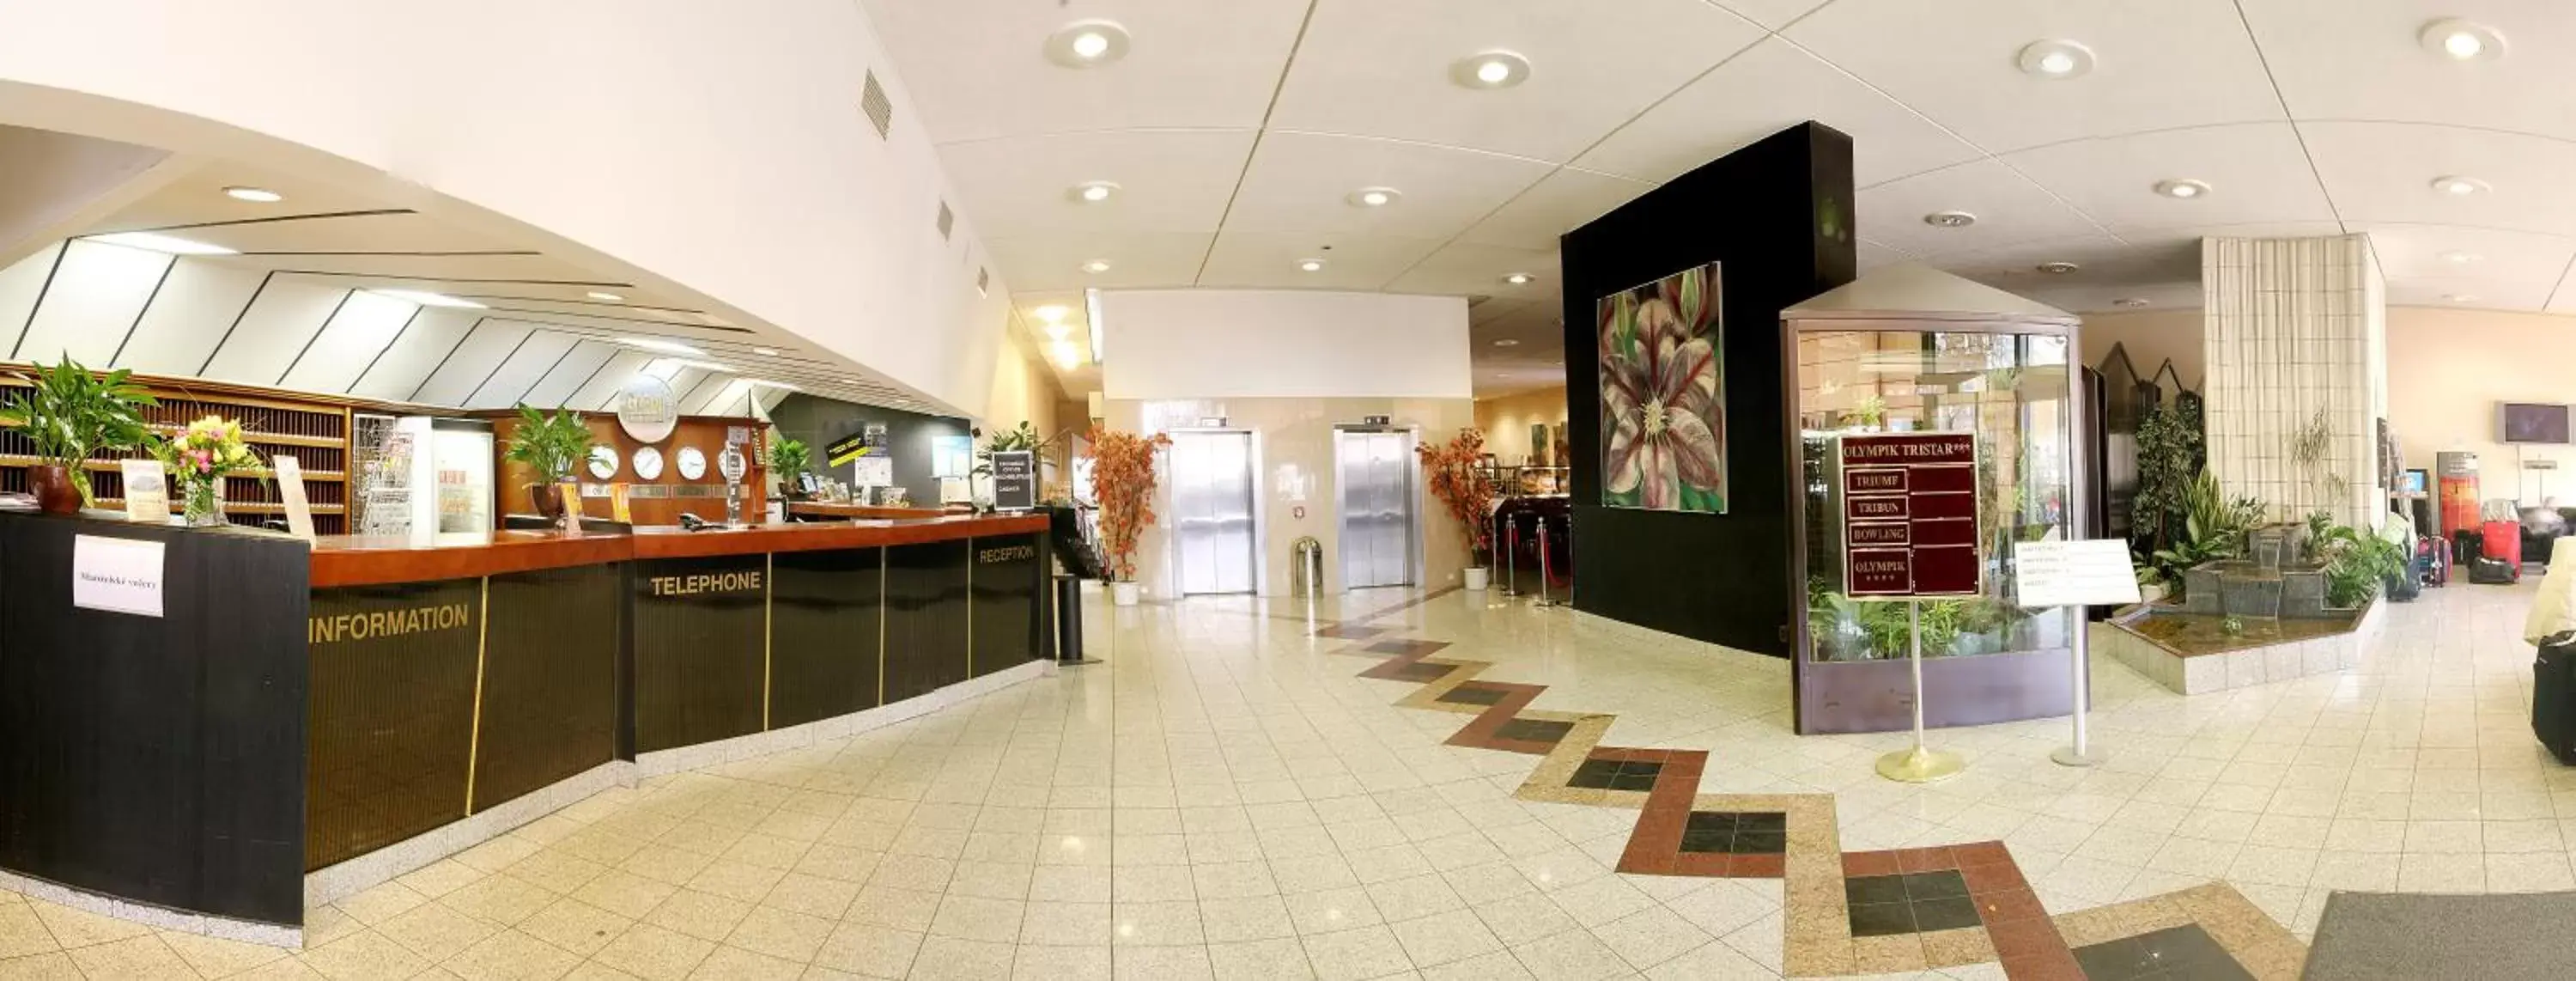 Lobby or reception, Lobby/Reception in Olympik Tristar